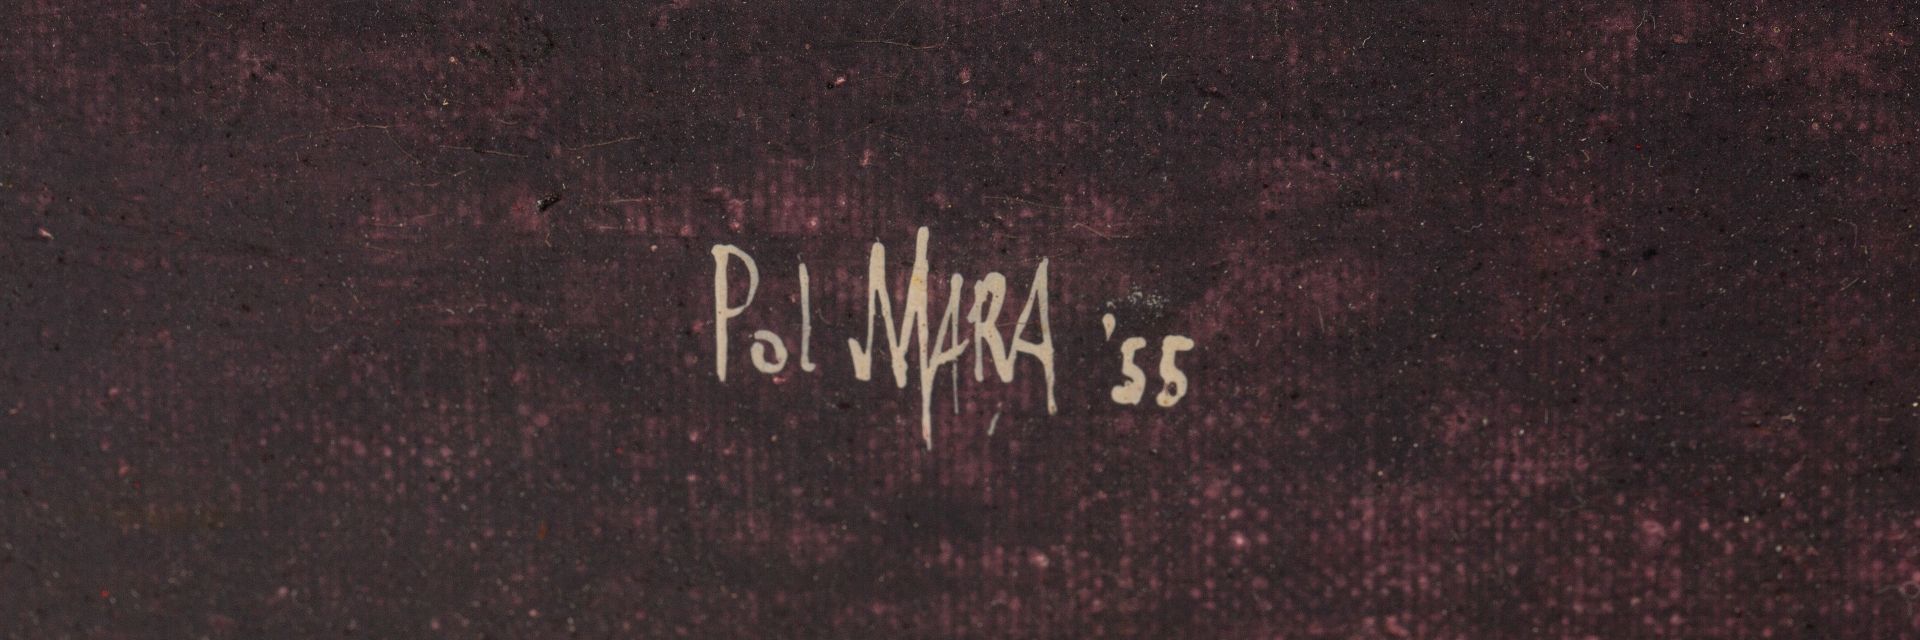 POL MARA (BELGIAN 1920-1998) - Bild 3 aus 4